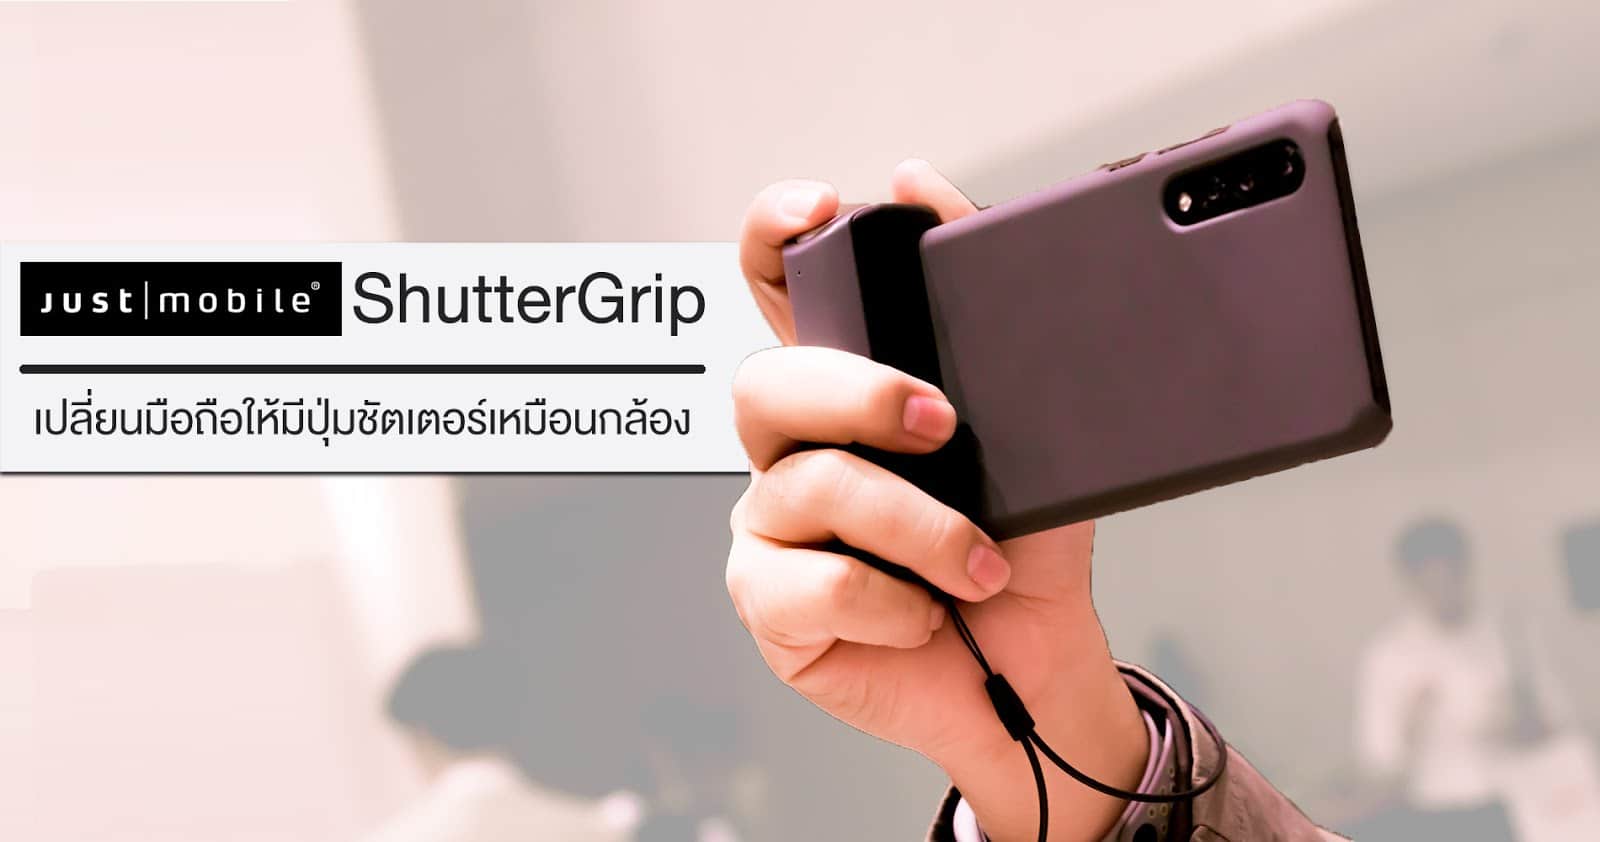 รีวิว Just Mobile ShutterGrip อุปกรณ์ที่ช่วยให้ถ่ายรูปด้วยมือถือได้ง่ายขึ้น ประหนึ่งถือกล้องคอมแพค 1